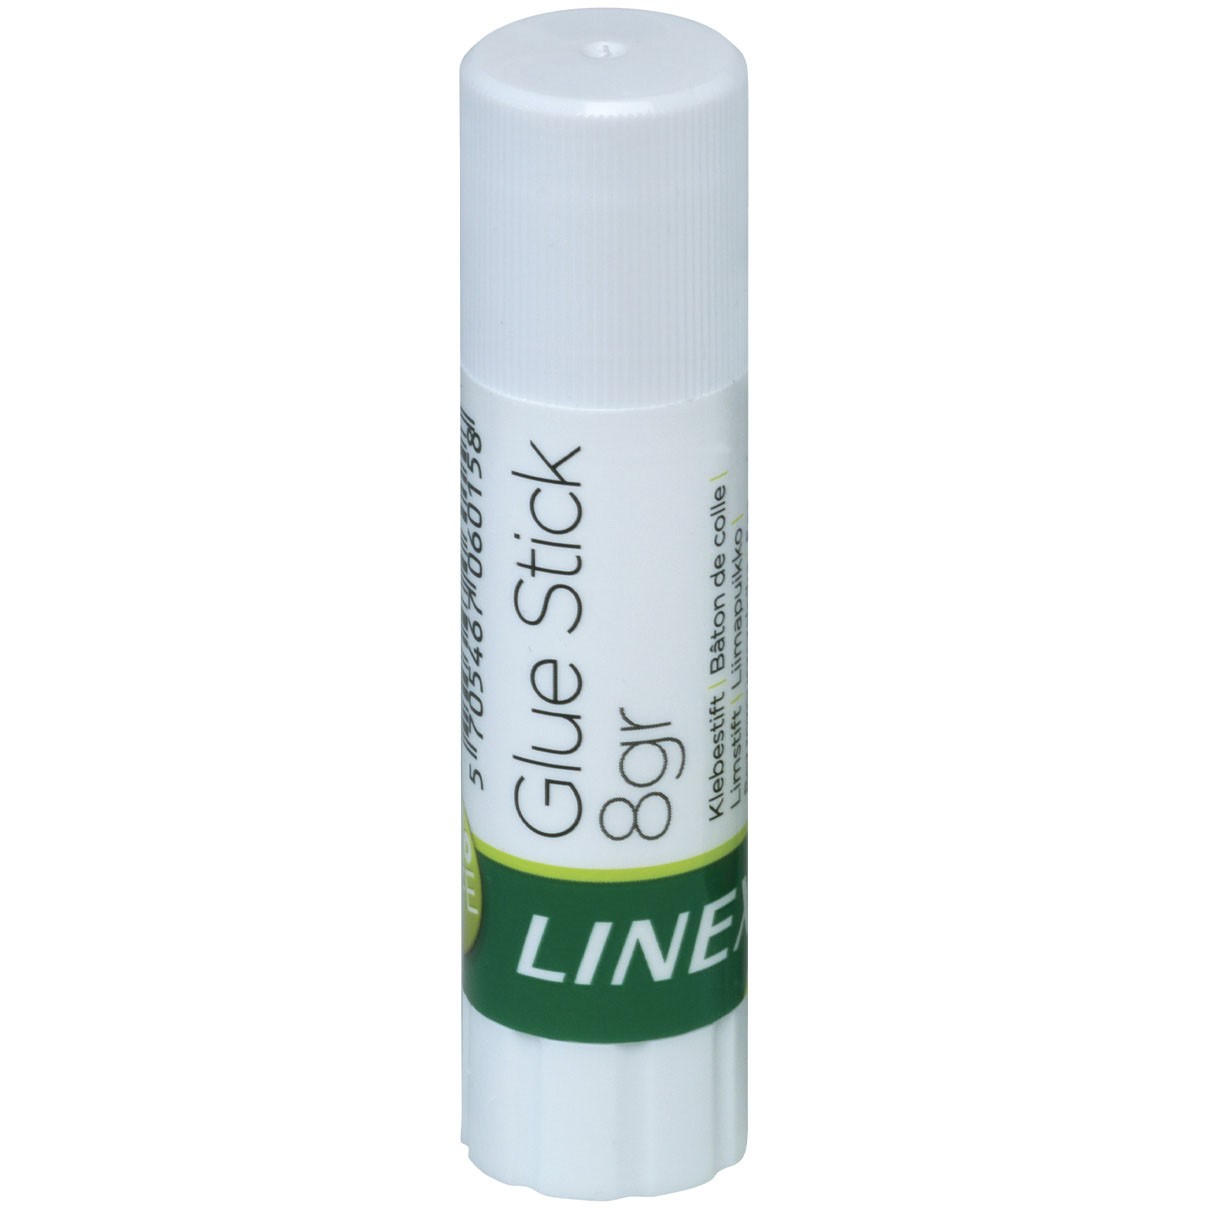 Linex limstift 8g 2stk